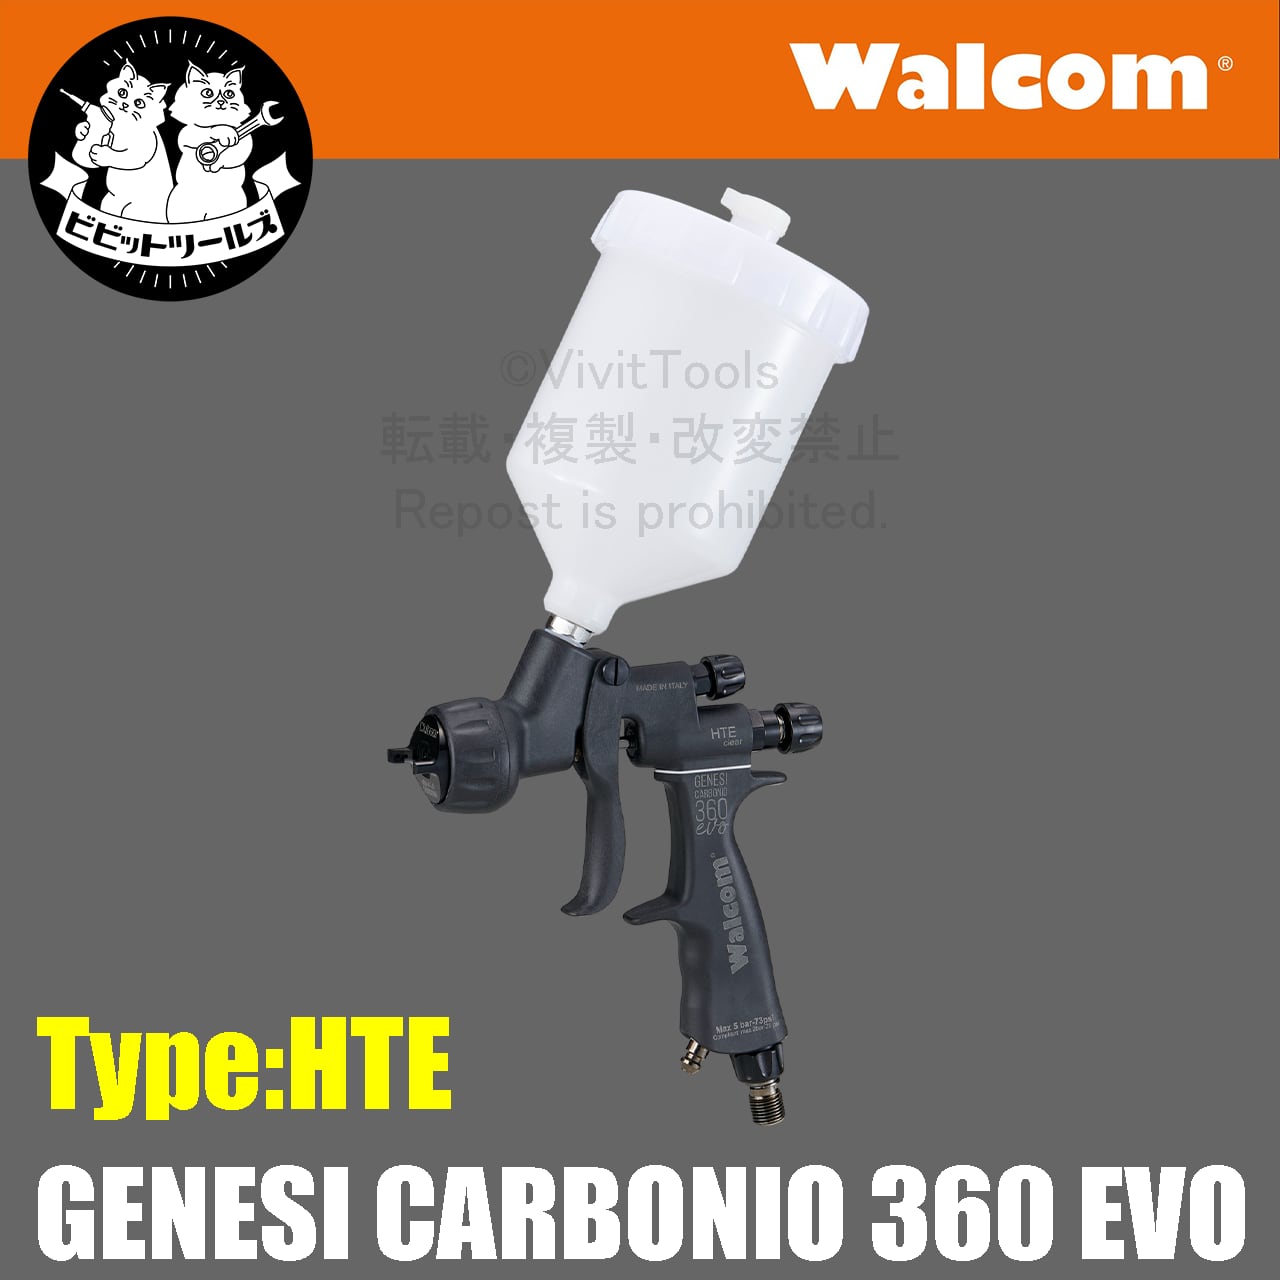 walcom carbonio360